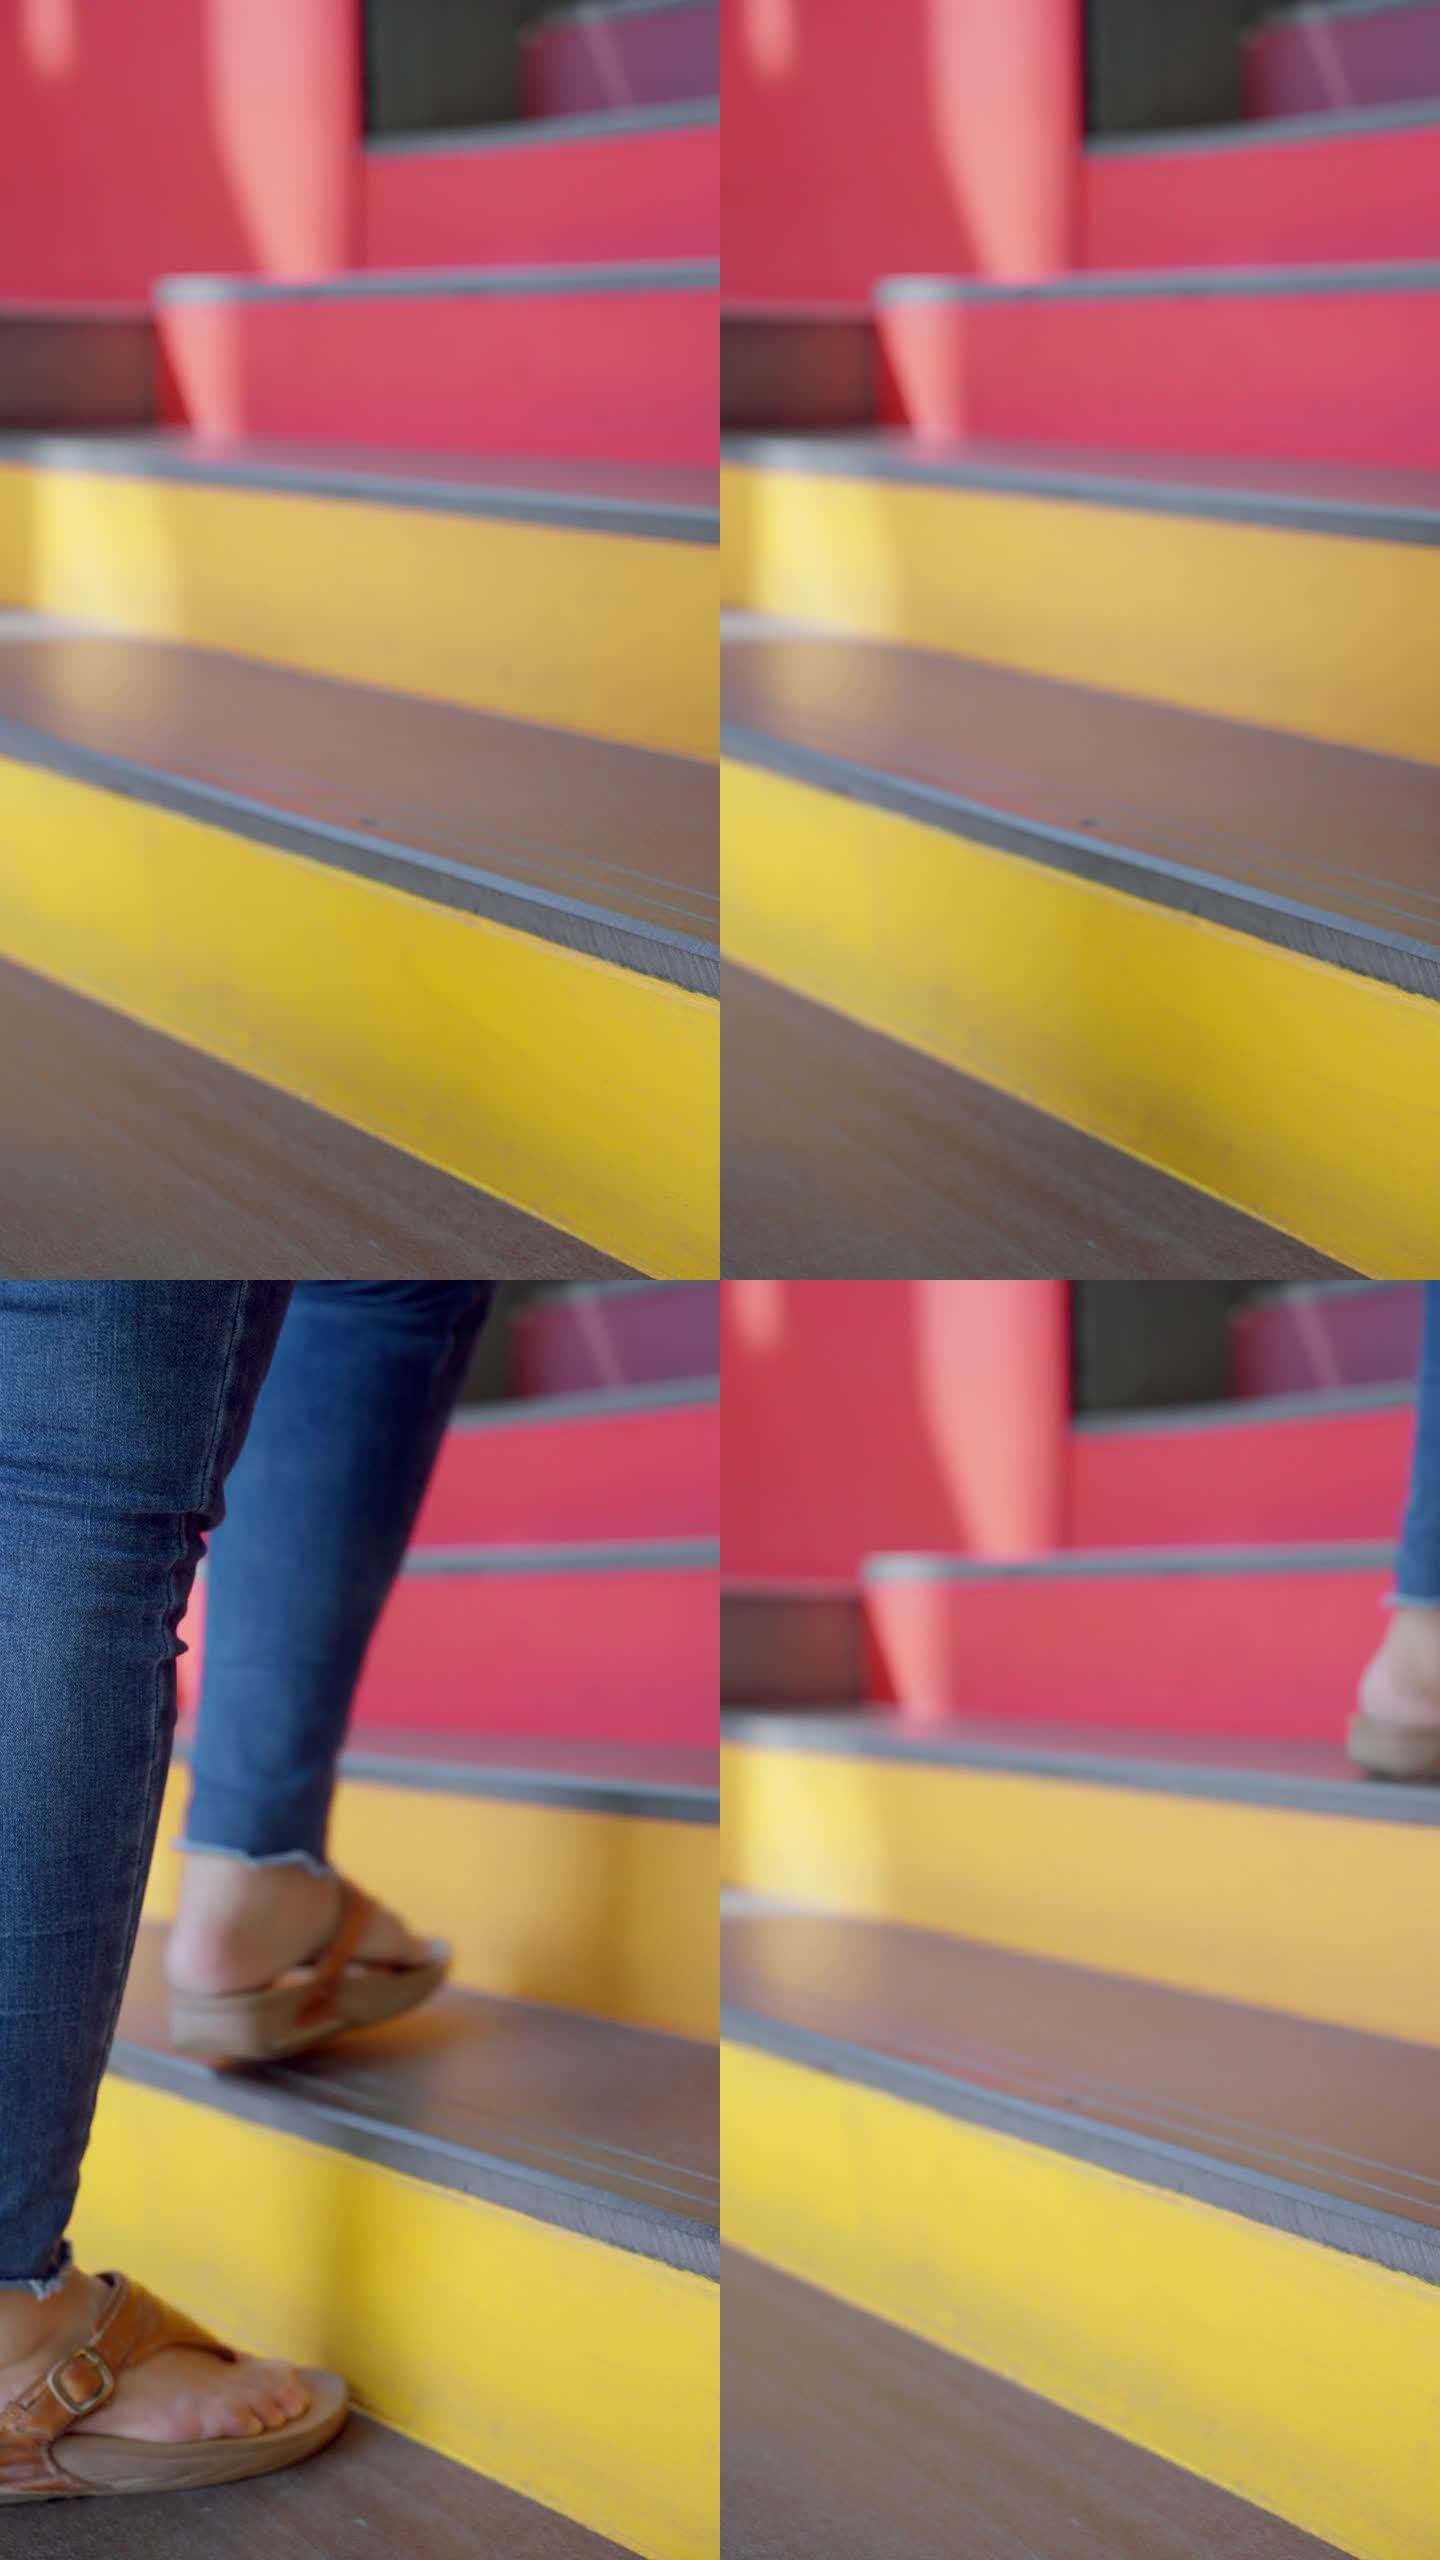 一个不知名的女人穿着牛仔裤和凉鞋走上彩色的红黄相间的梯子